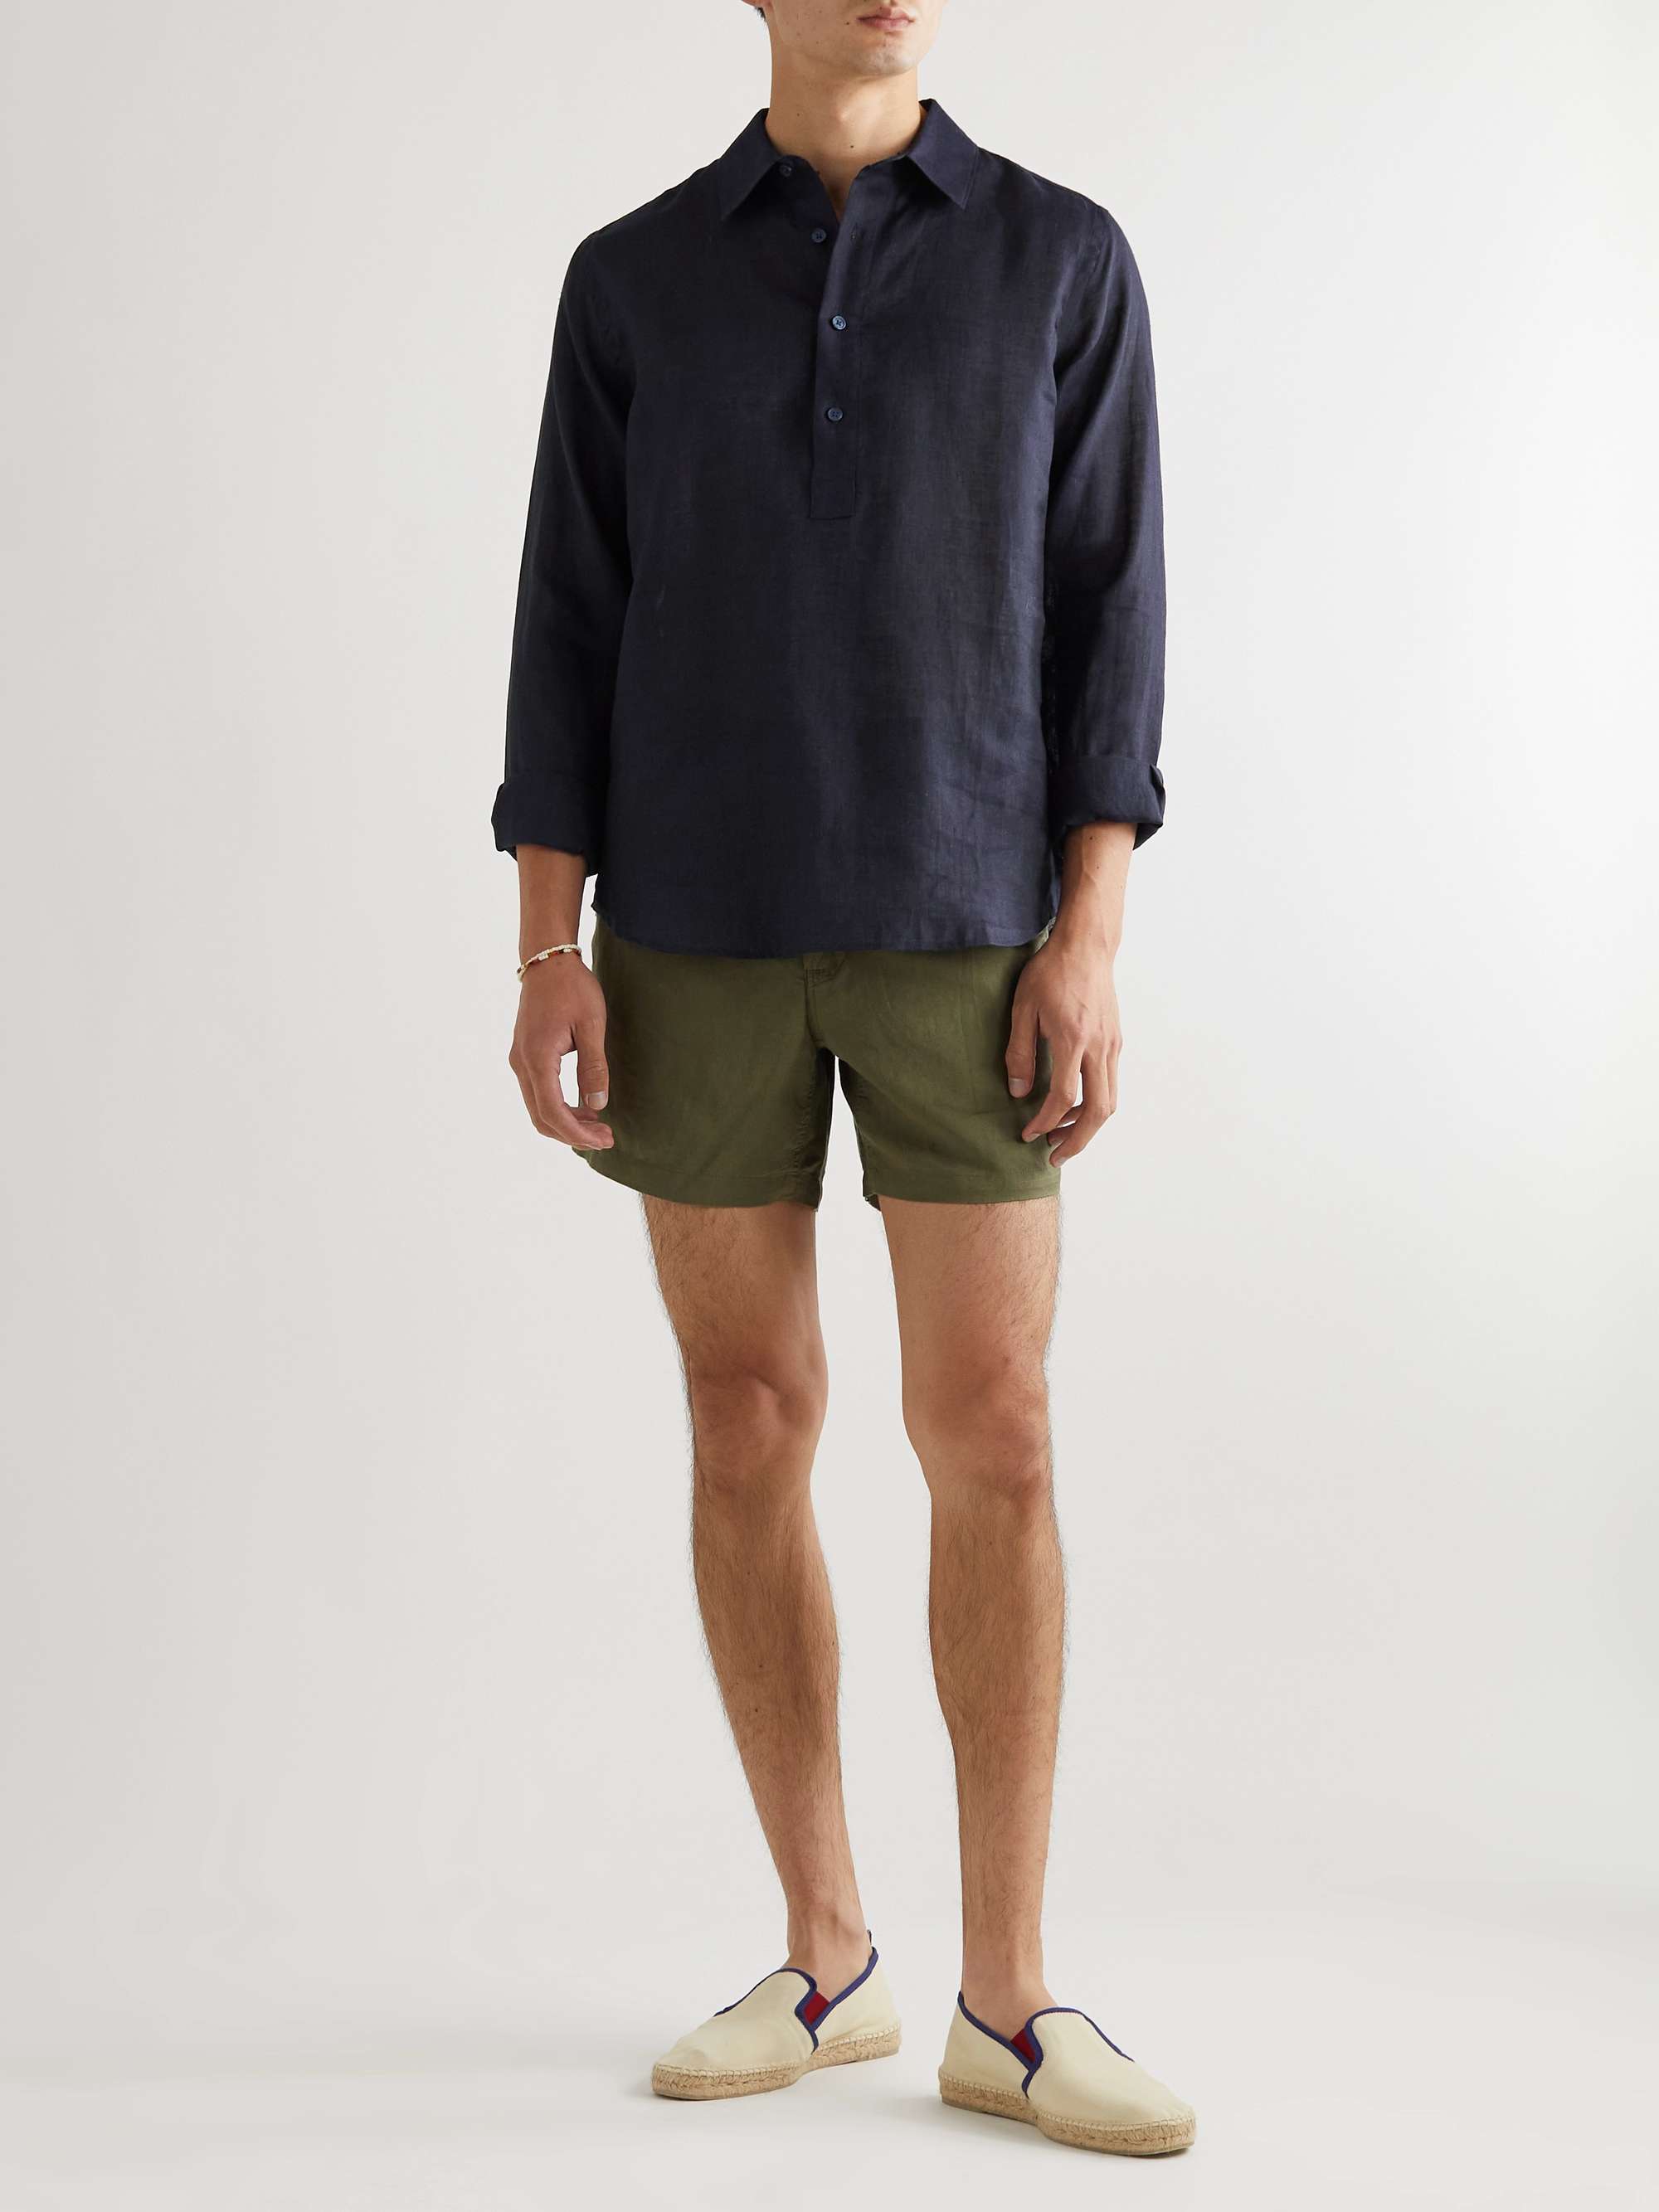 ORLEBAR BROWN Ridley Linen Shirt | MR PORTER